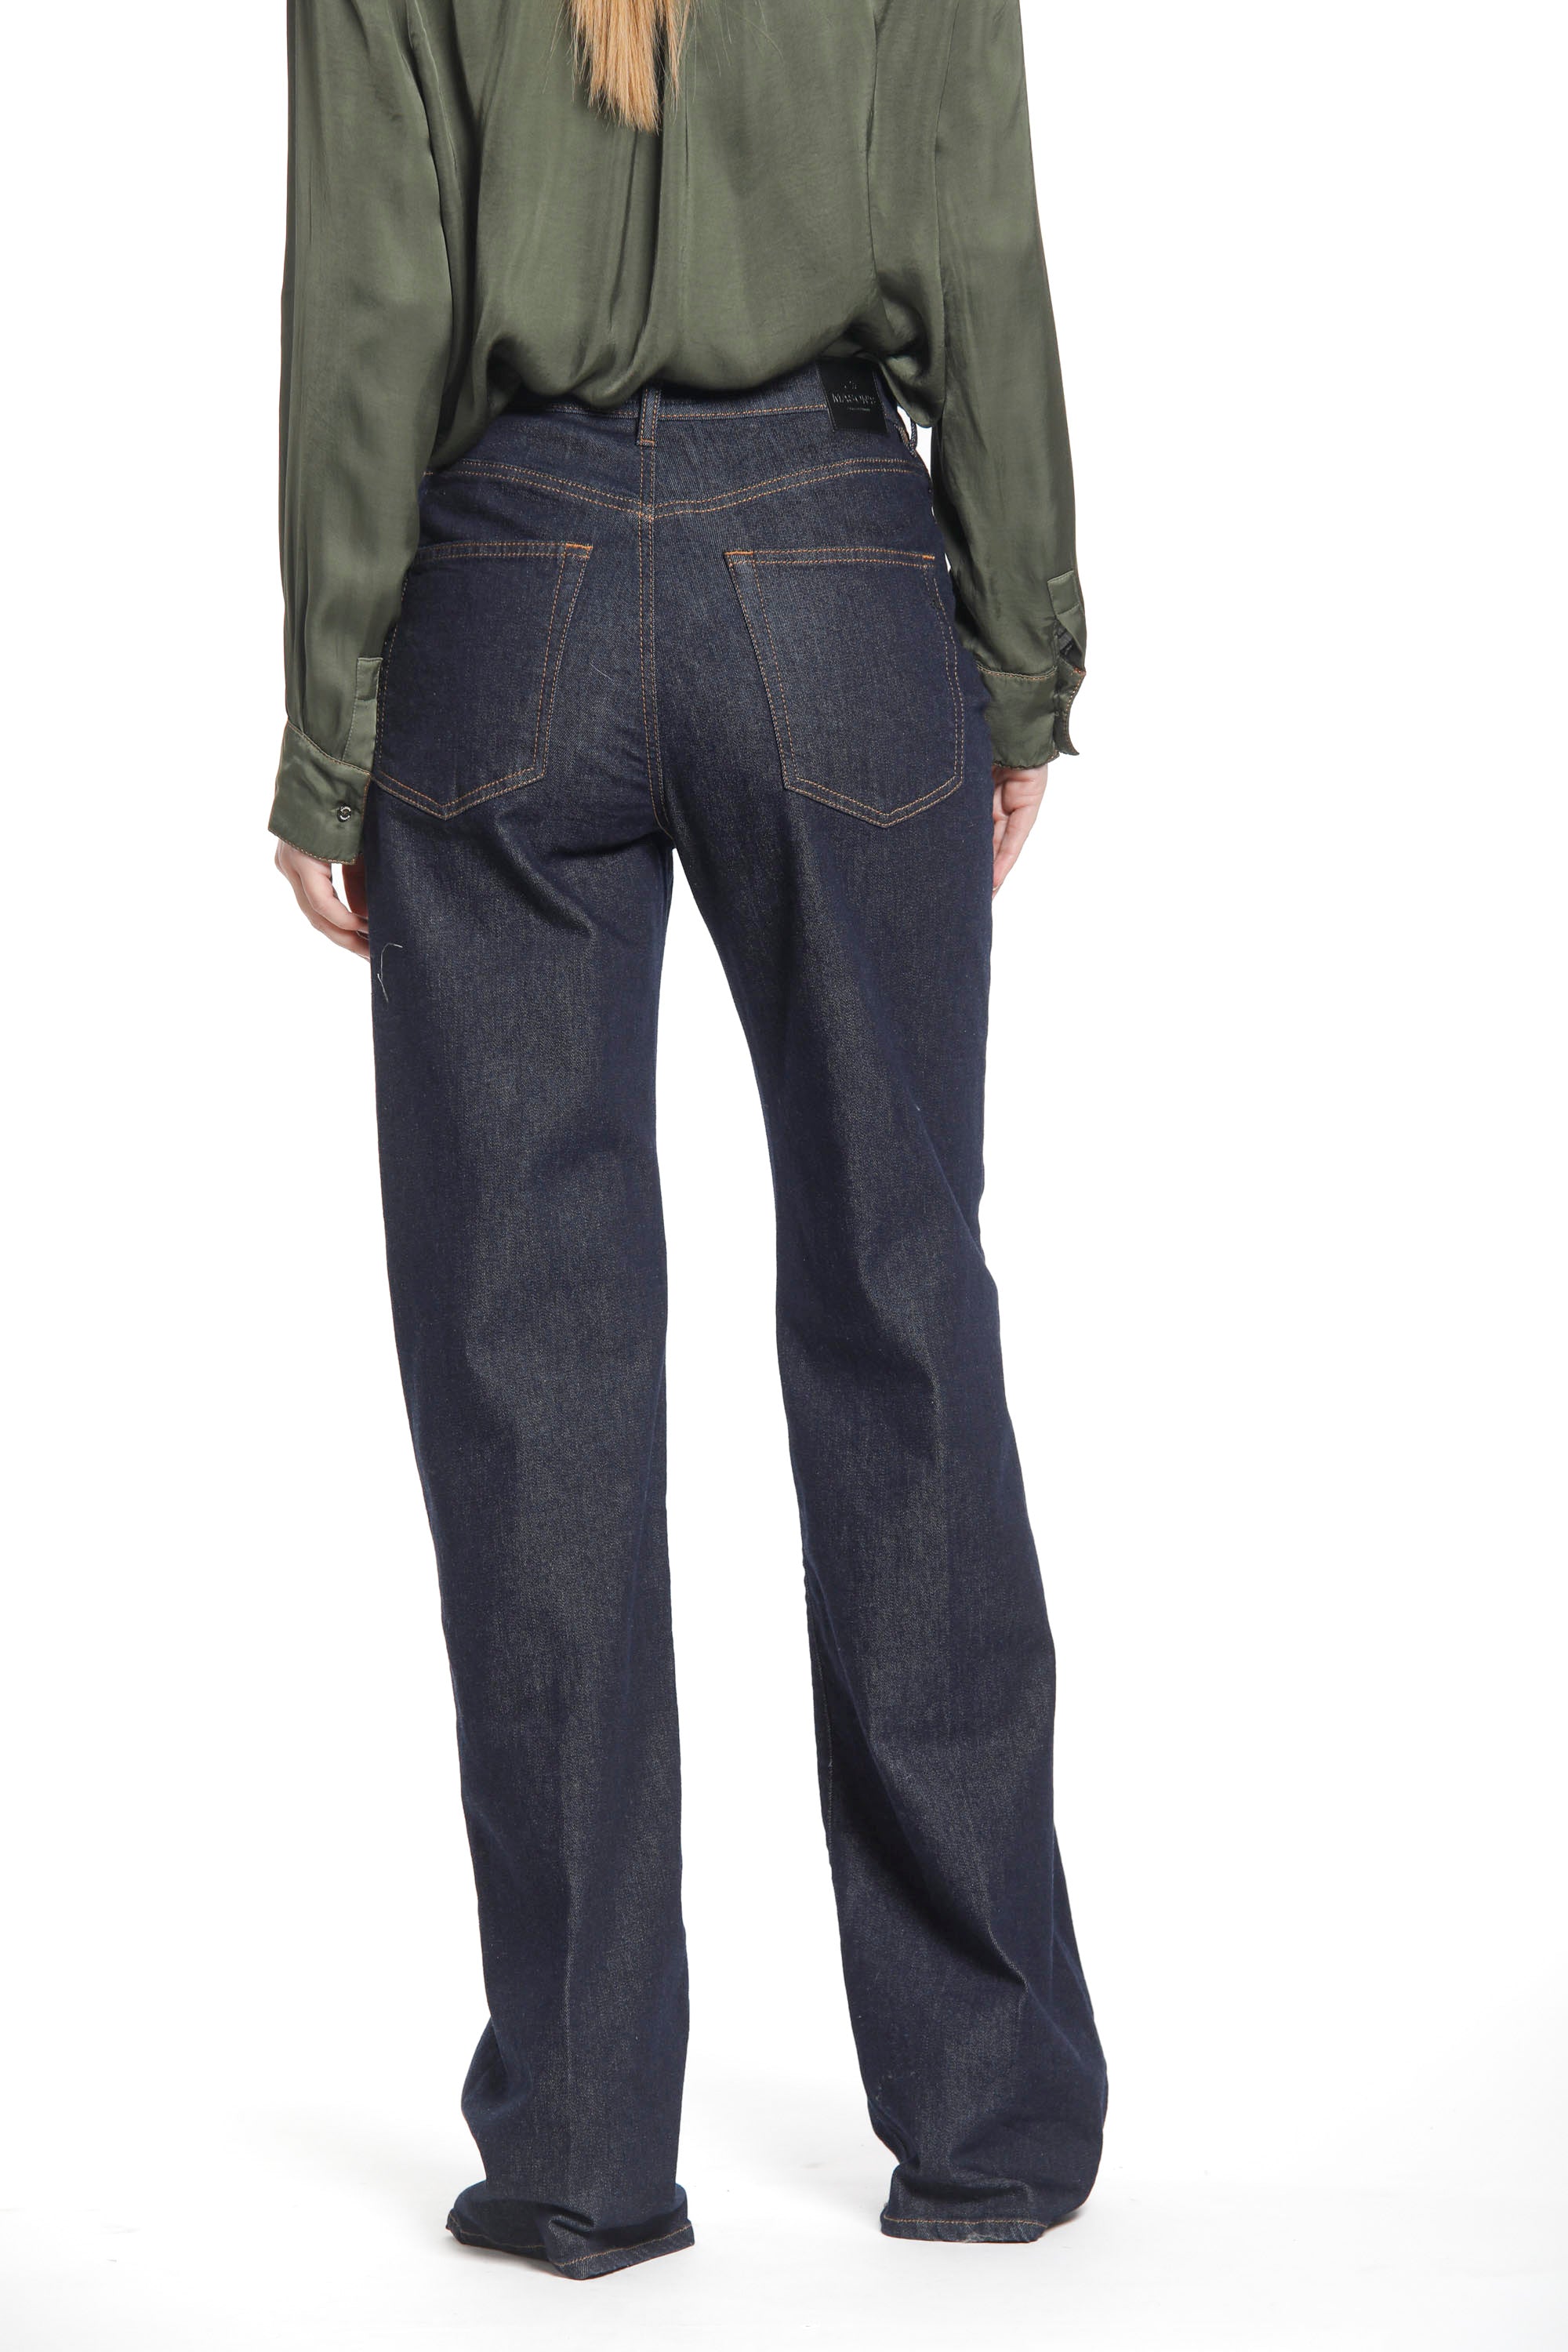 Image 6 de pantalon 5 poches pour femmes en denim bleu marine modèle Sienna de Mason's